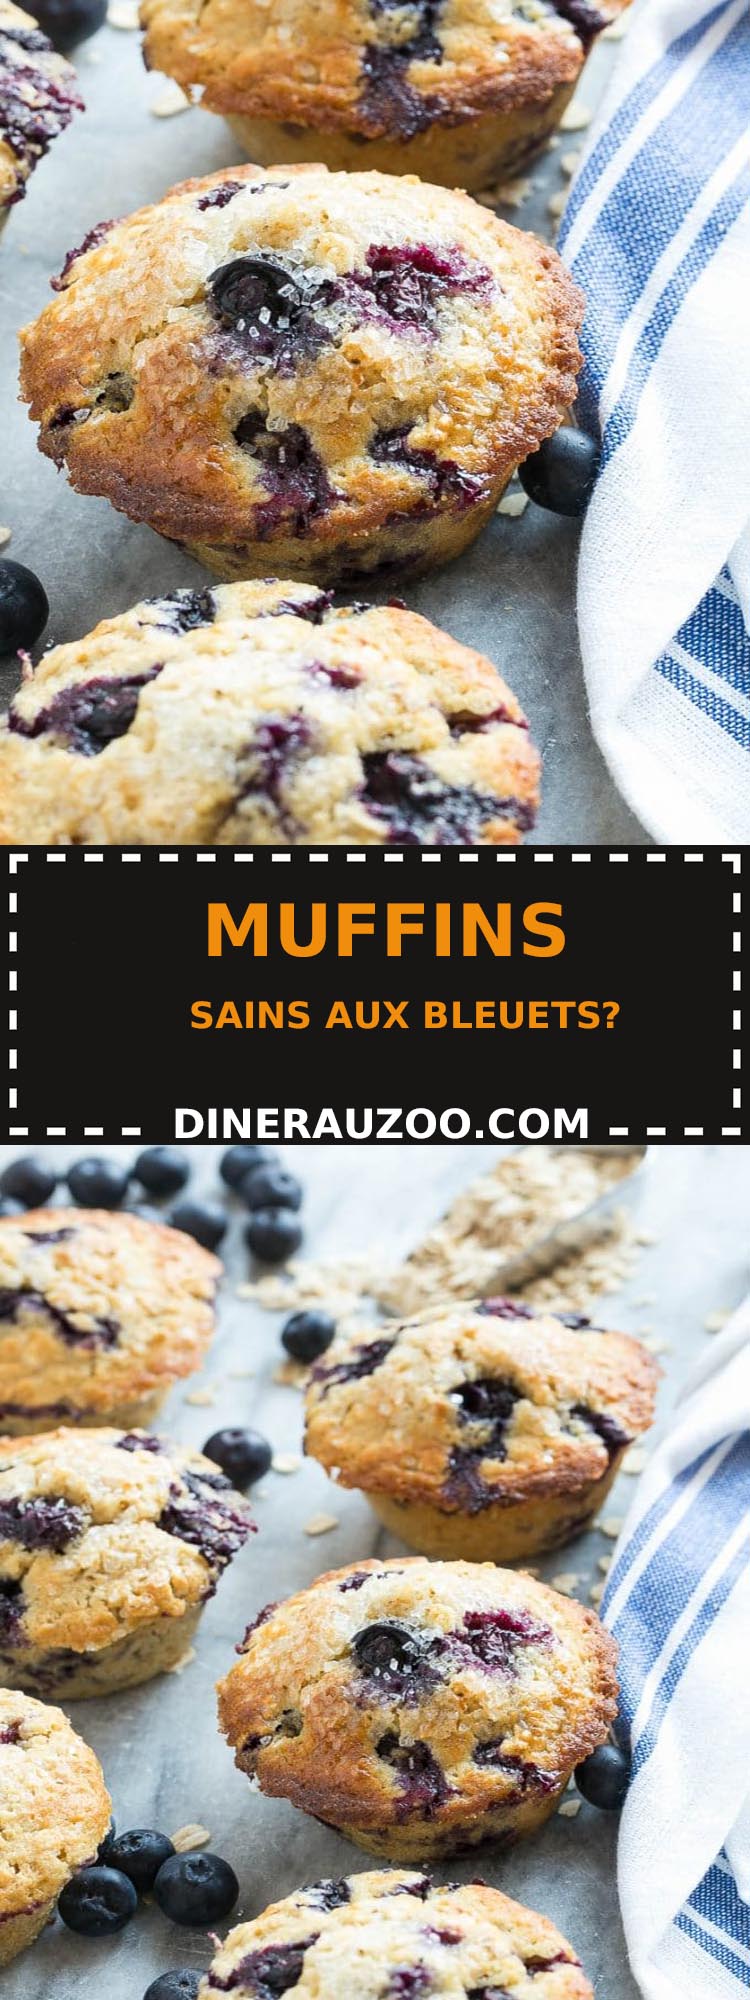 Muffins Sains aux Bleuets